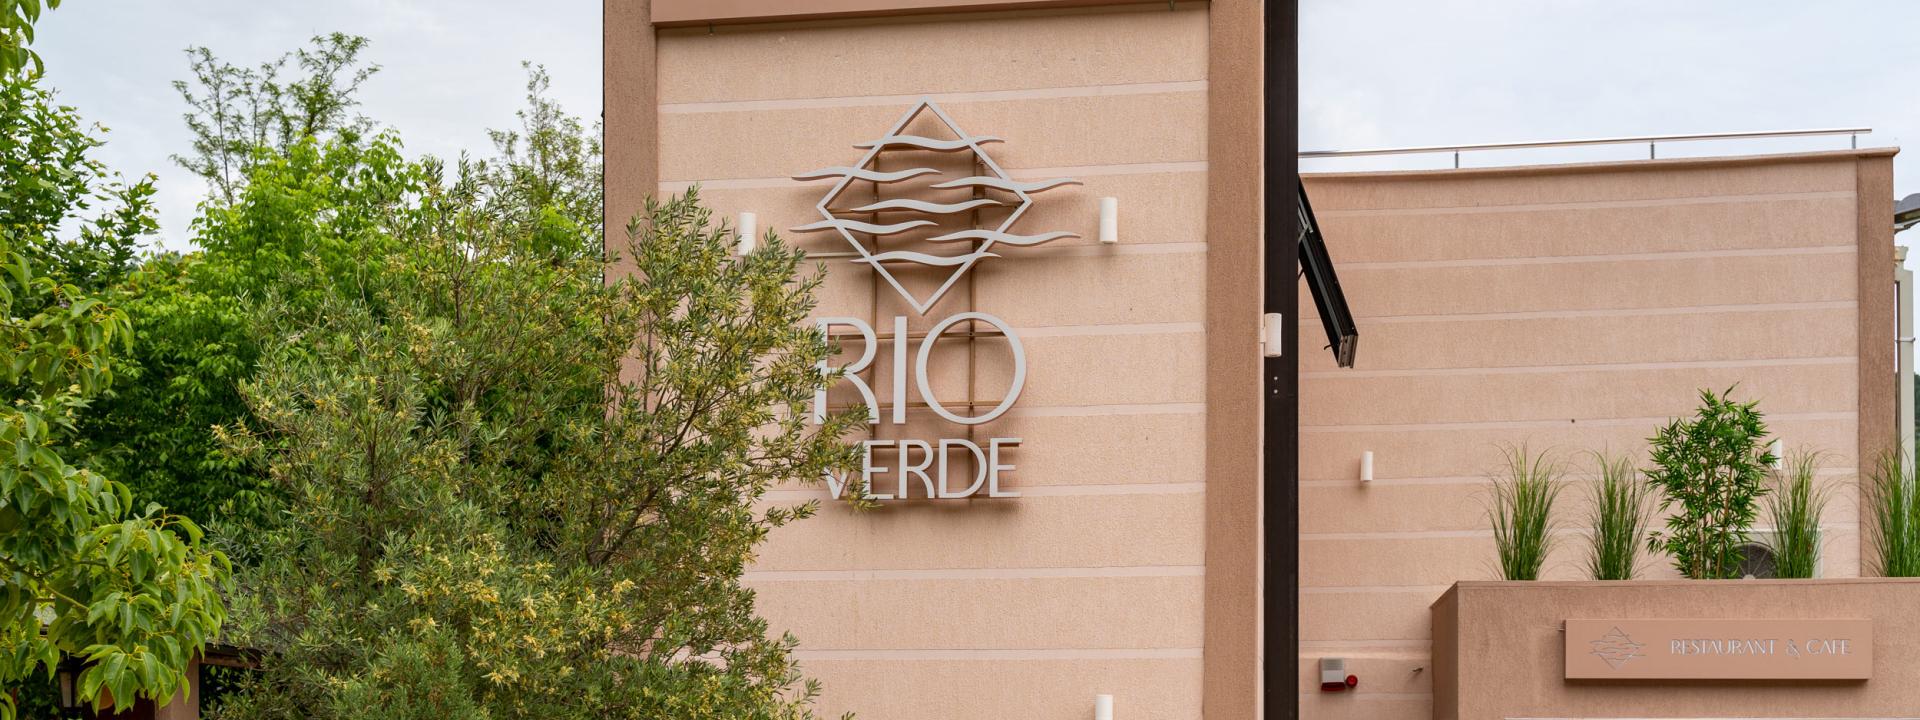 Our story - Rio Verde